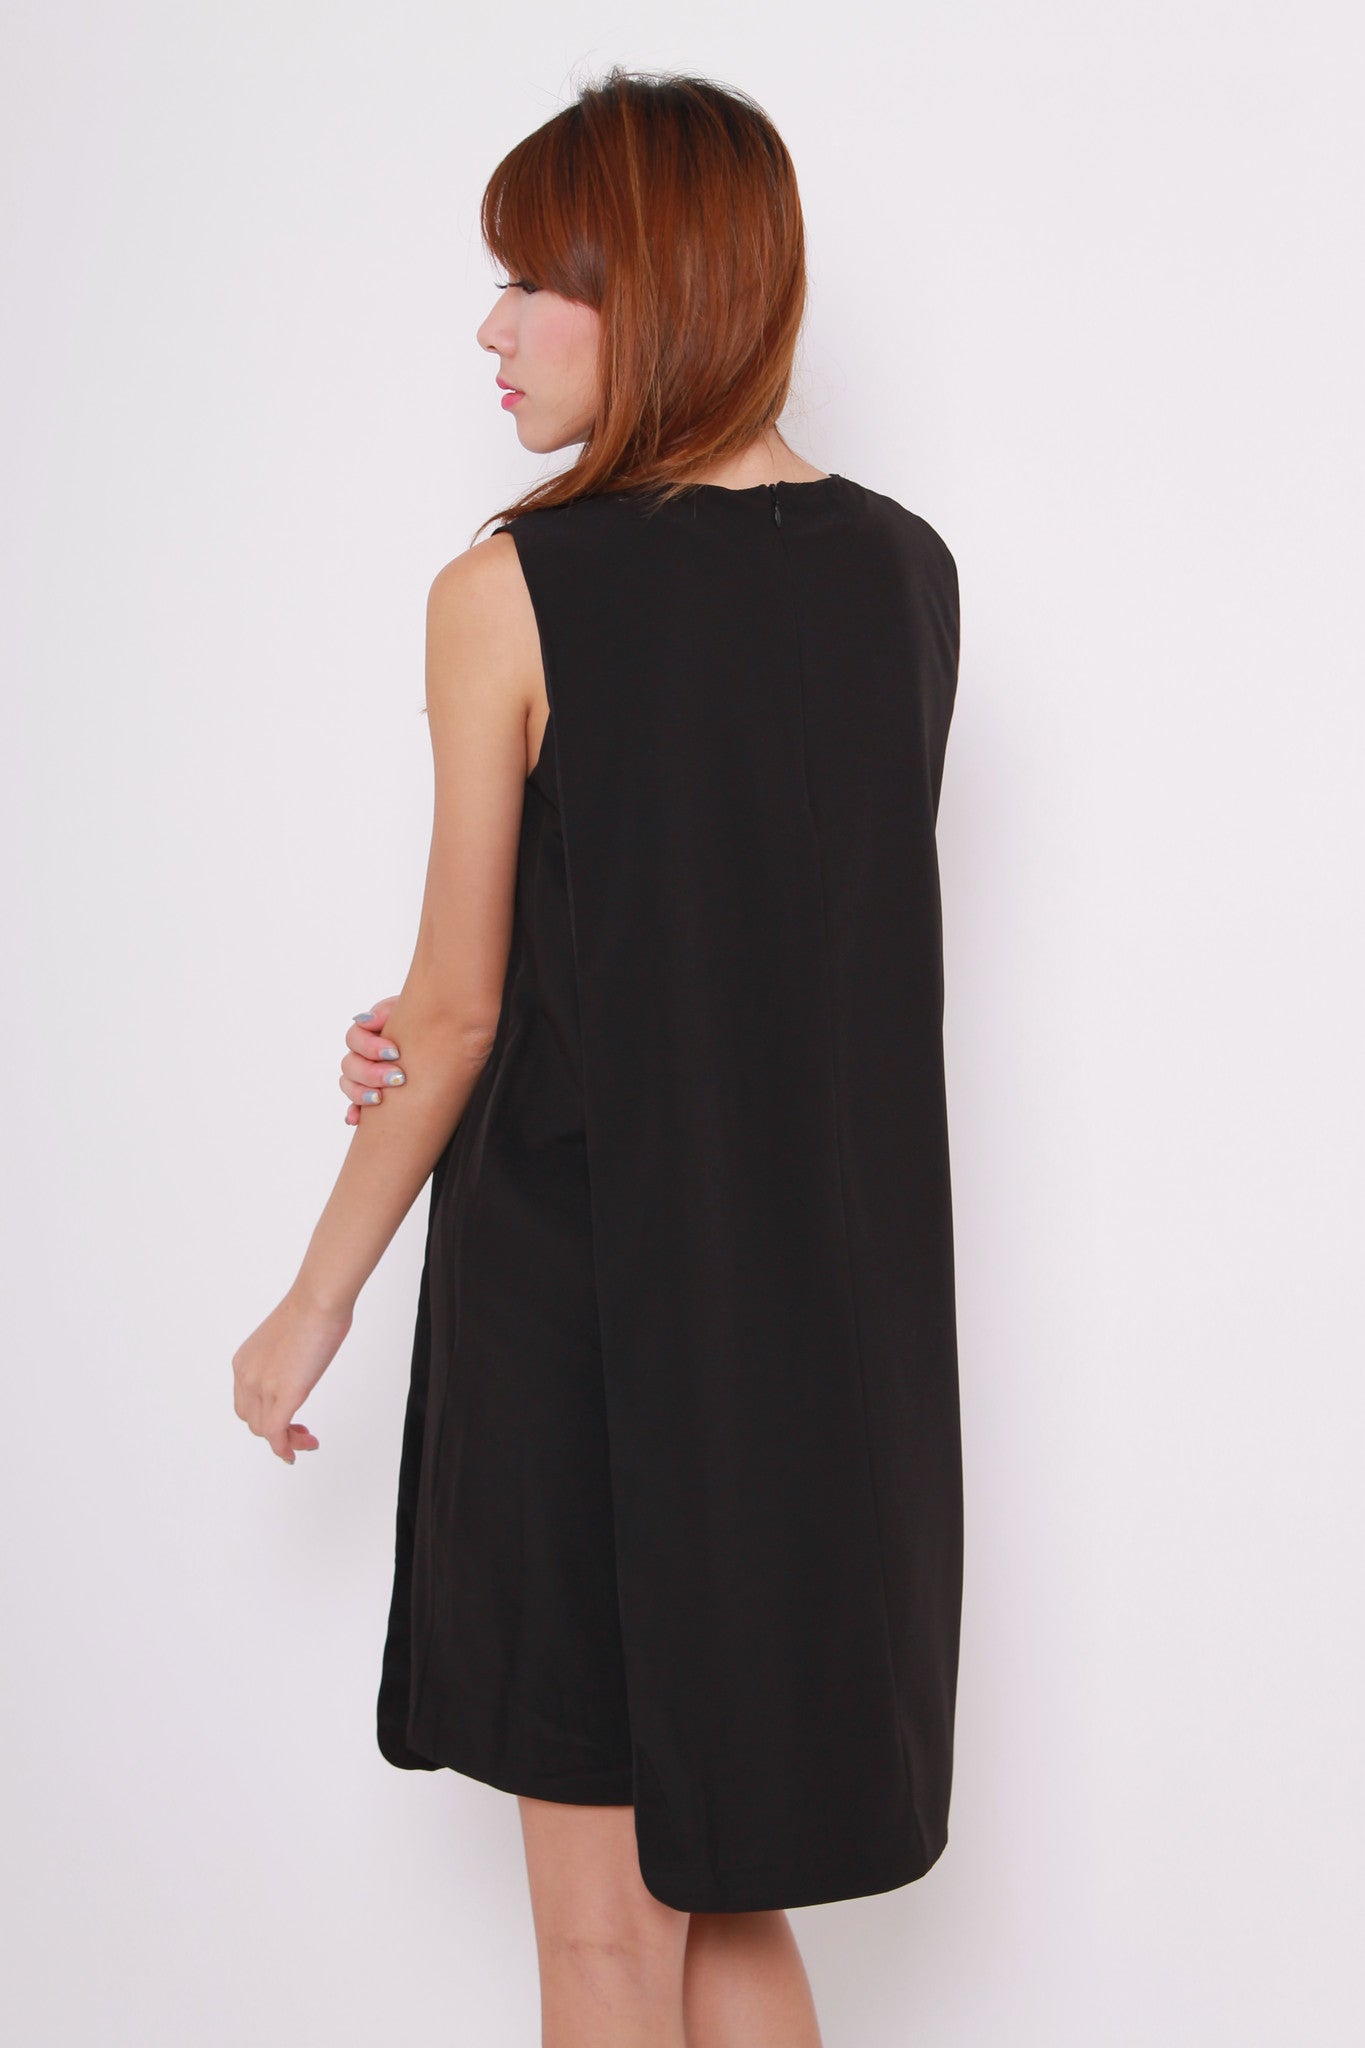 Celeste Layer Curve Hem Dress in Black